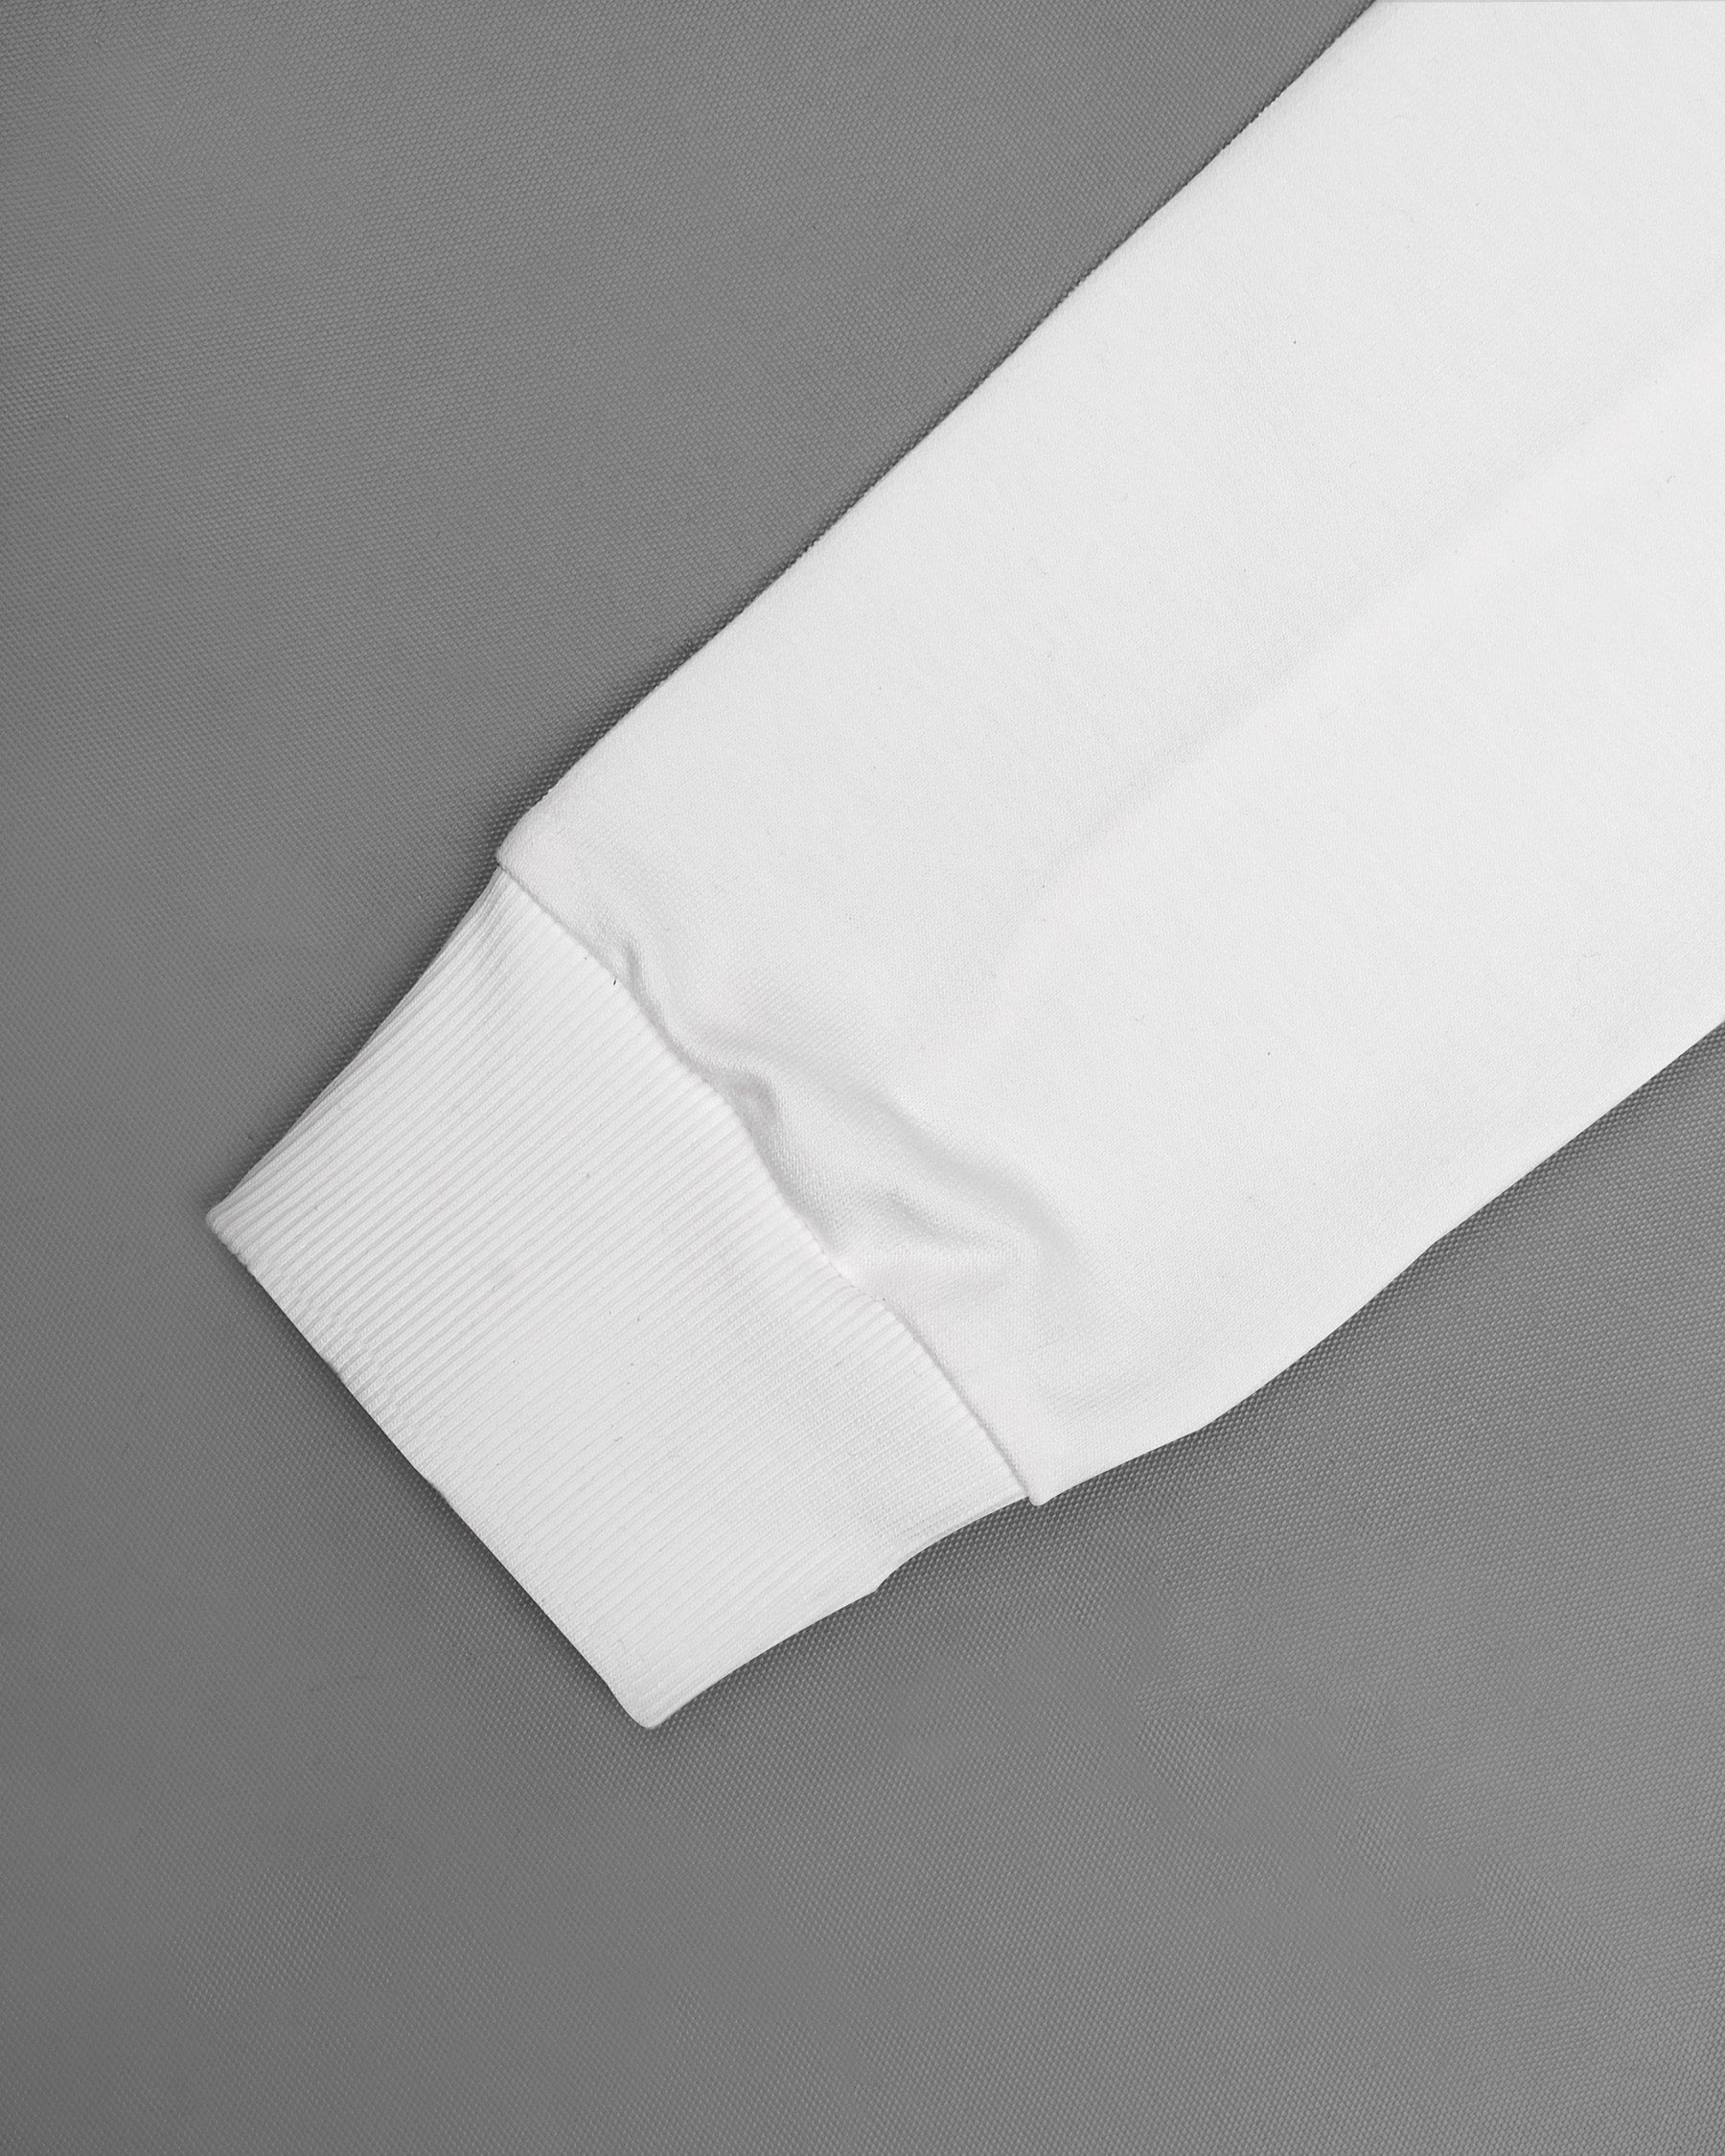 Bright White Premium Cotton Sweatshirt TS600-S, TS600-M, TS600-L, TS600-XL, TS600-XXL, TS600-3XL, TS600-4XL